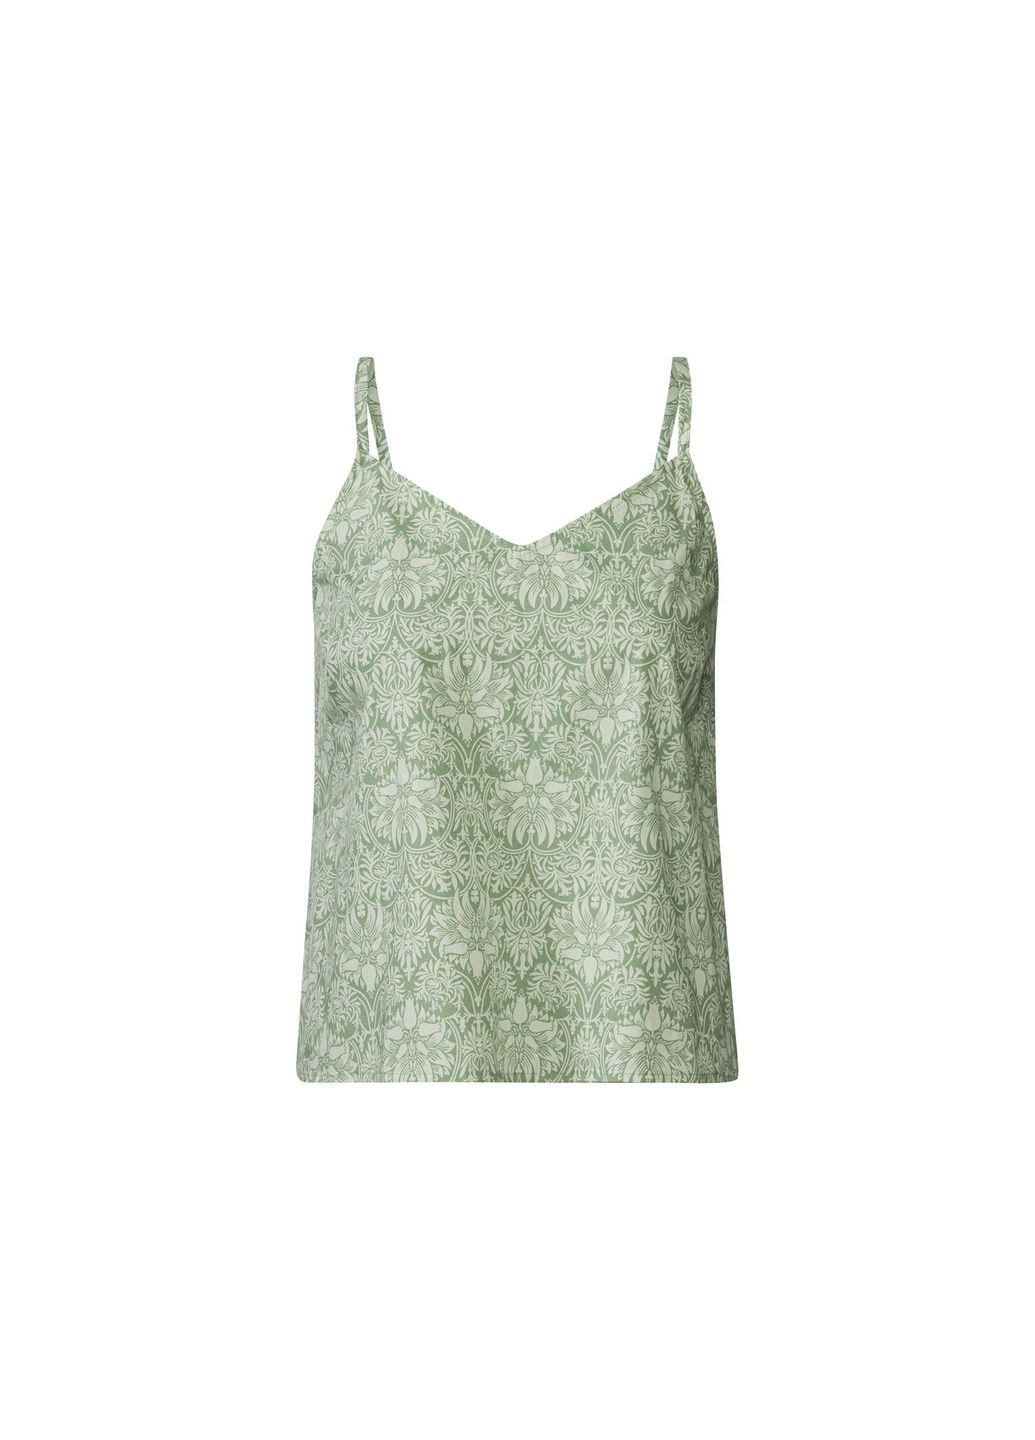 Зеленая пижама (майка и шорты) для женщины 404725 Esmara